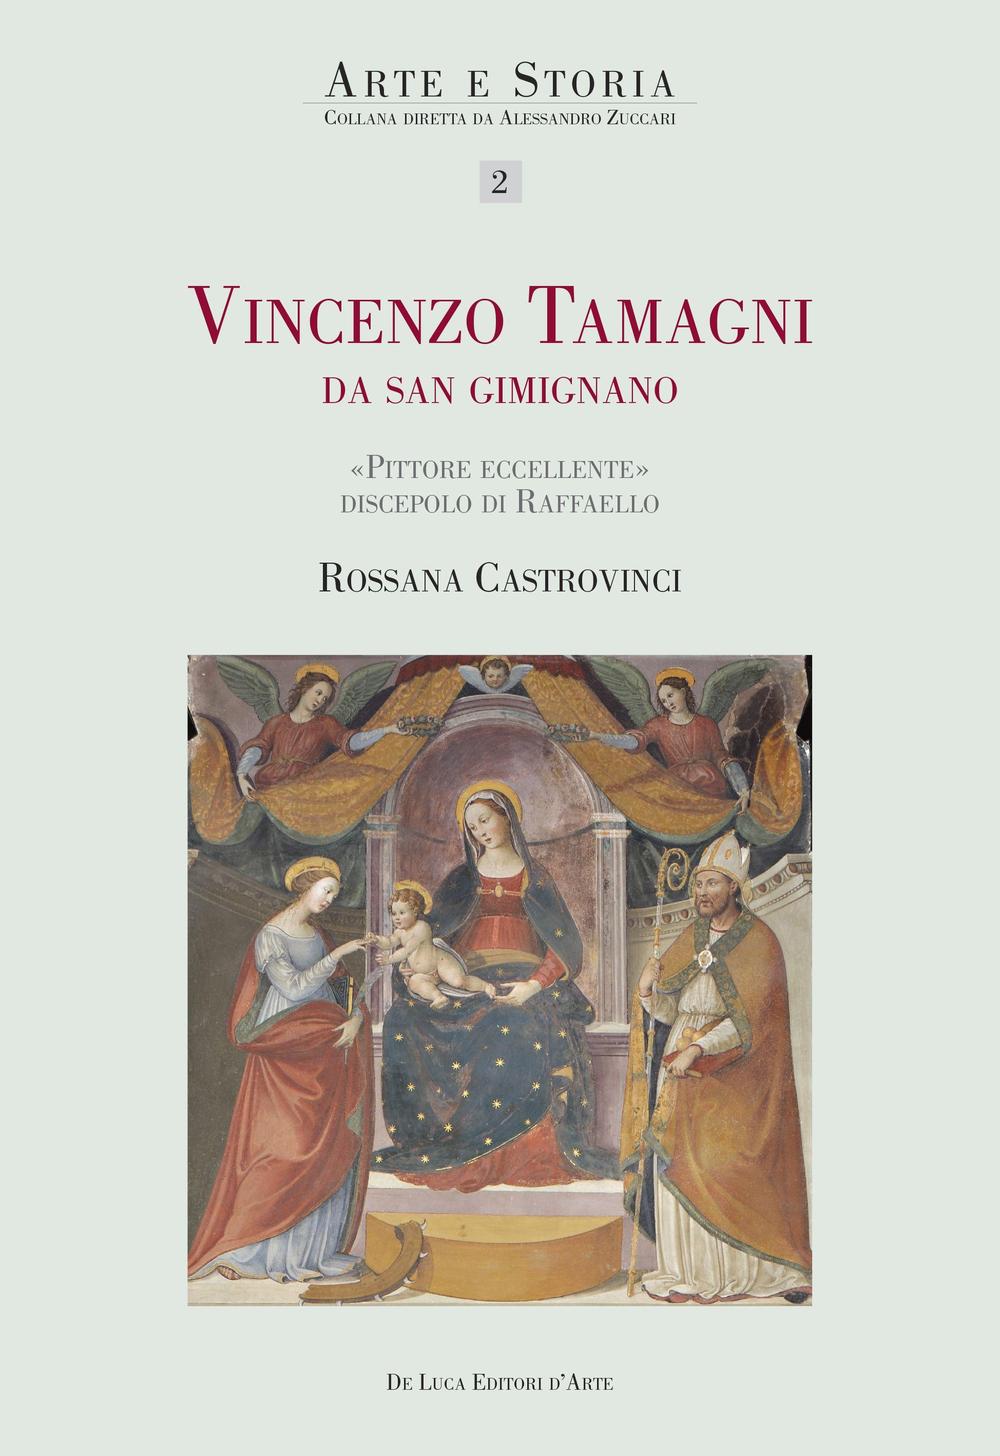 Vincenzo Tamagni da San Gimignano. Pittore eccellente discepolo di Raffaello